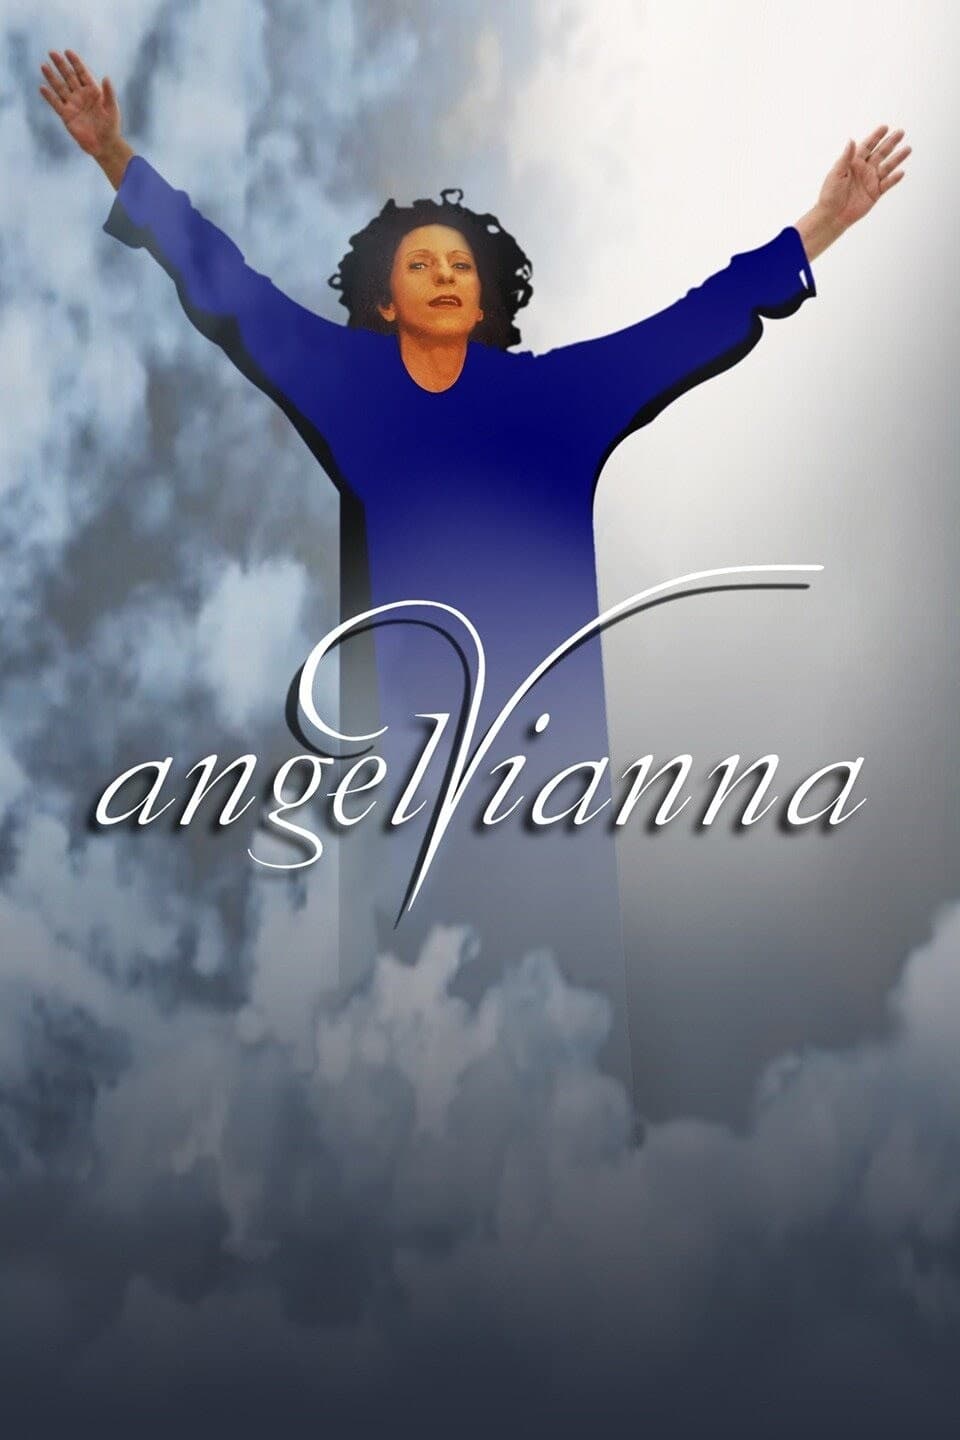 Angel Vianna – Voando Com os Pés no Chão